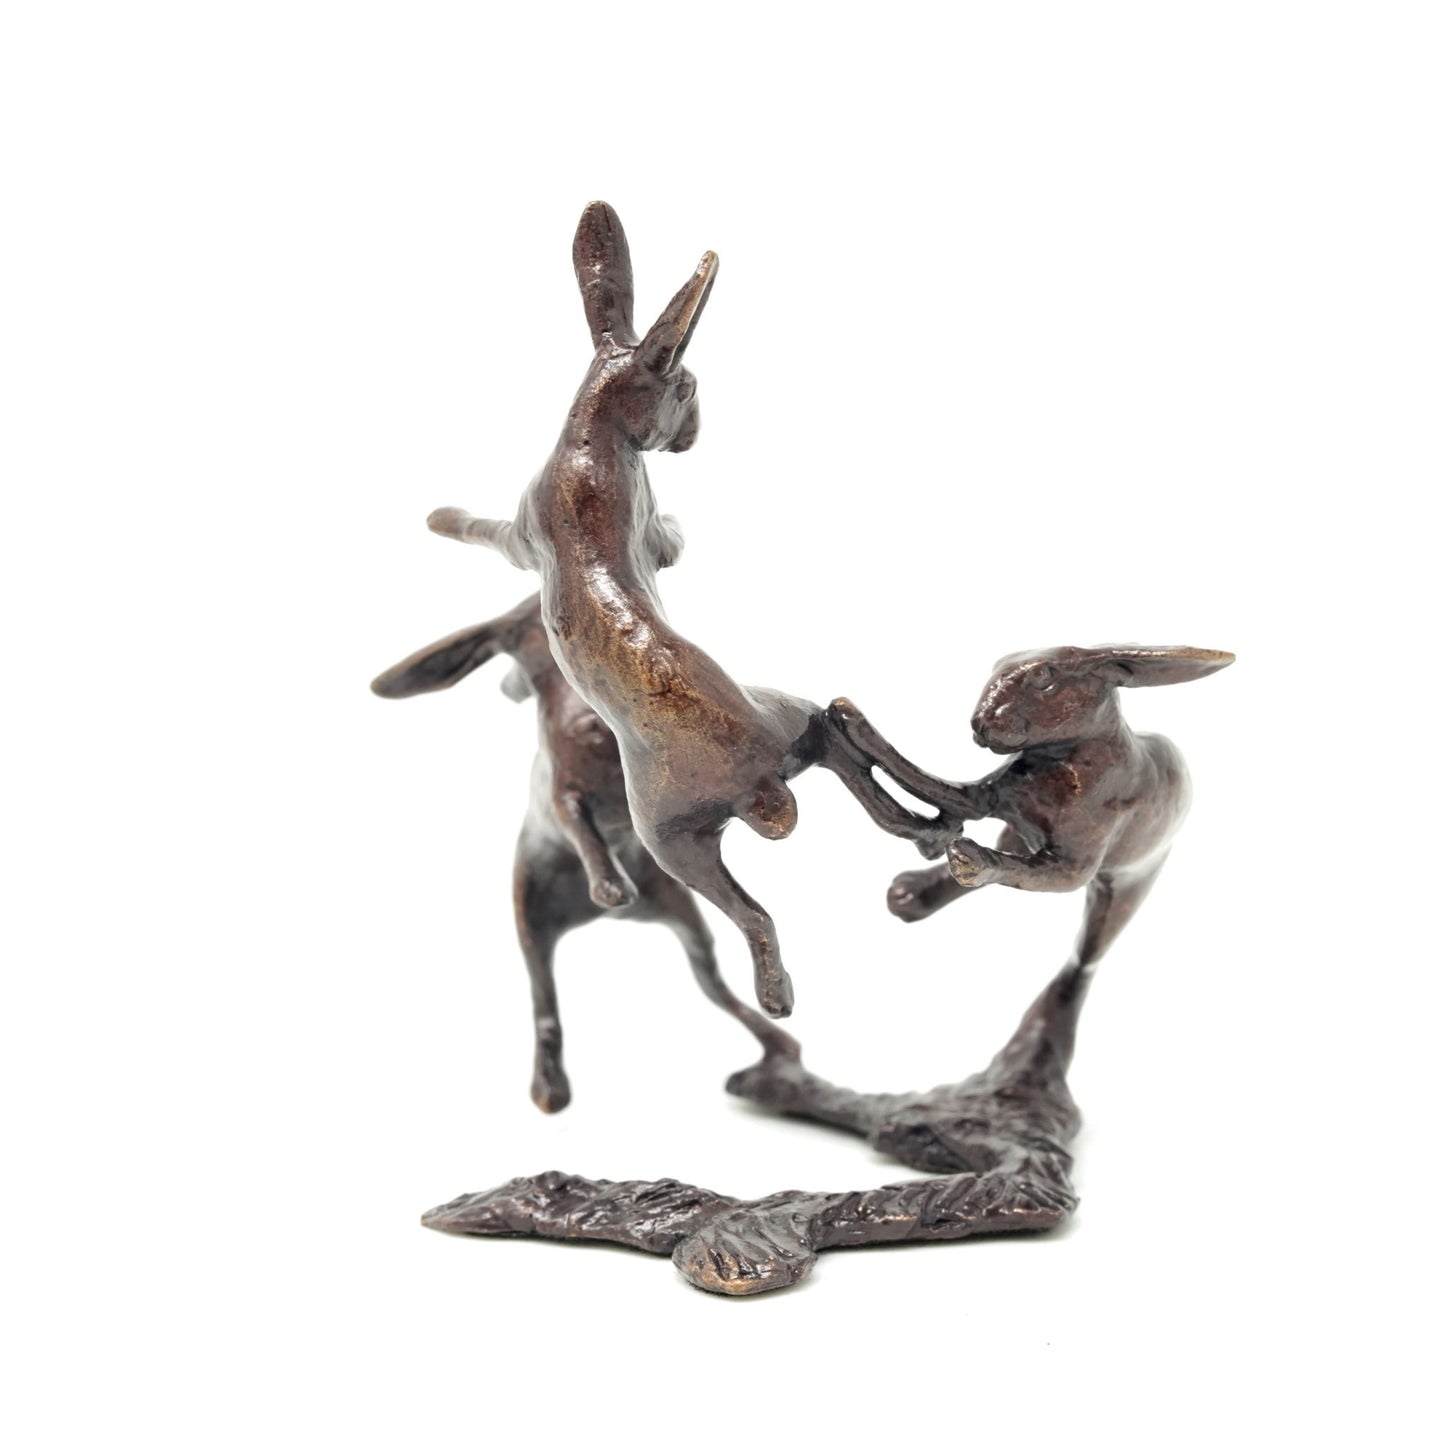 Hares Dancing